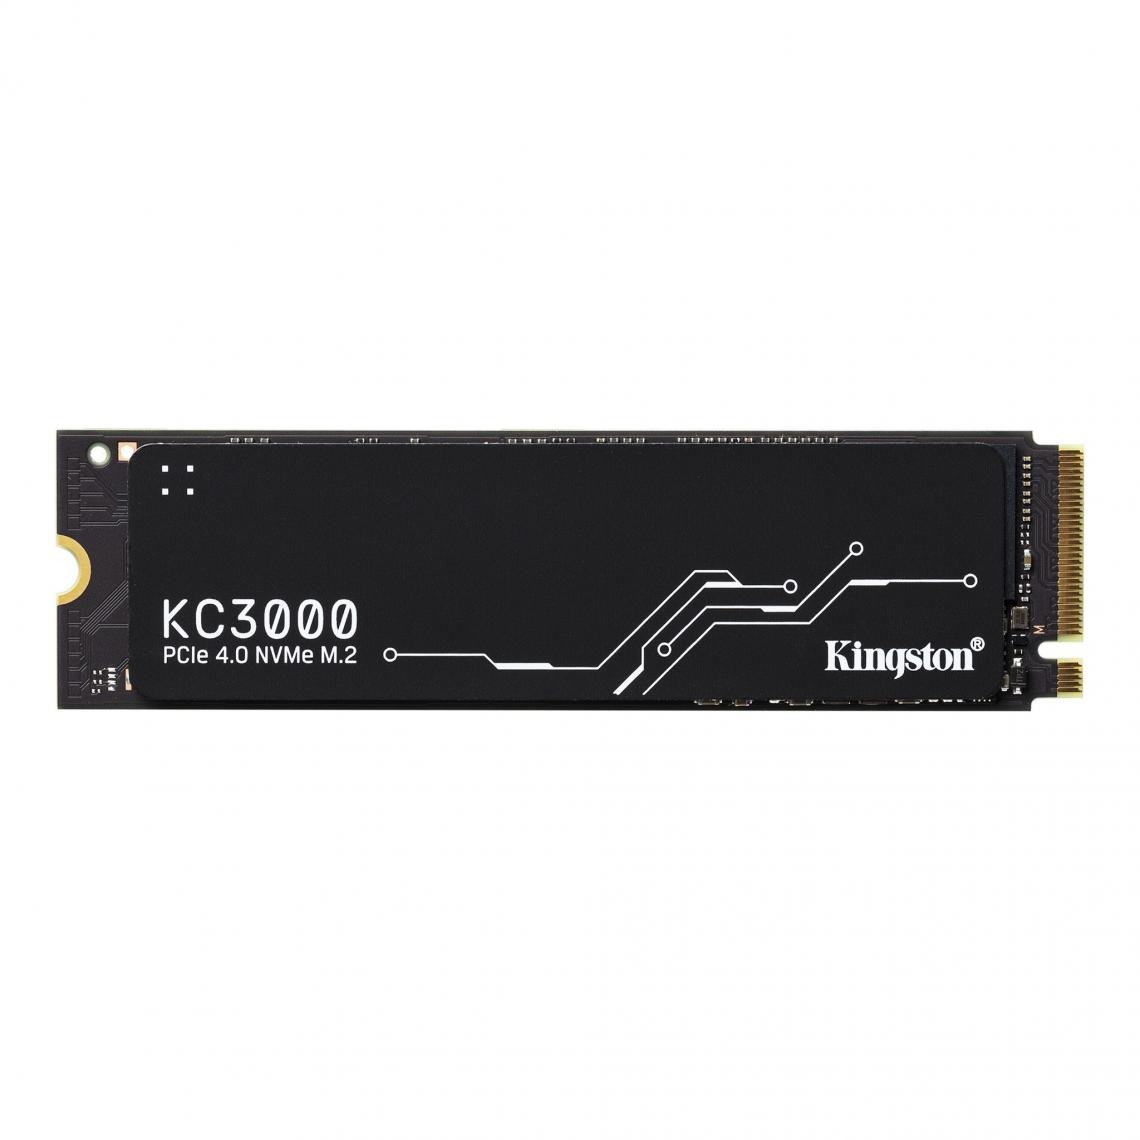 Kingston - Kingston Technology KC3000 M.2 512 Go PCI Express 4.0 3D TLC NVMe - SSD Interne